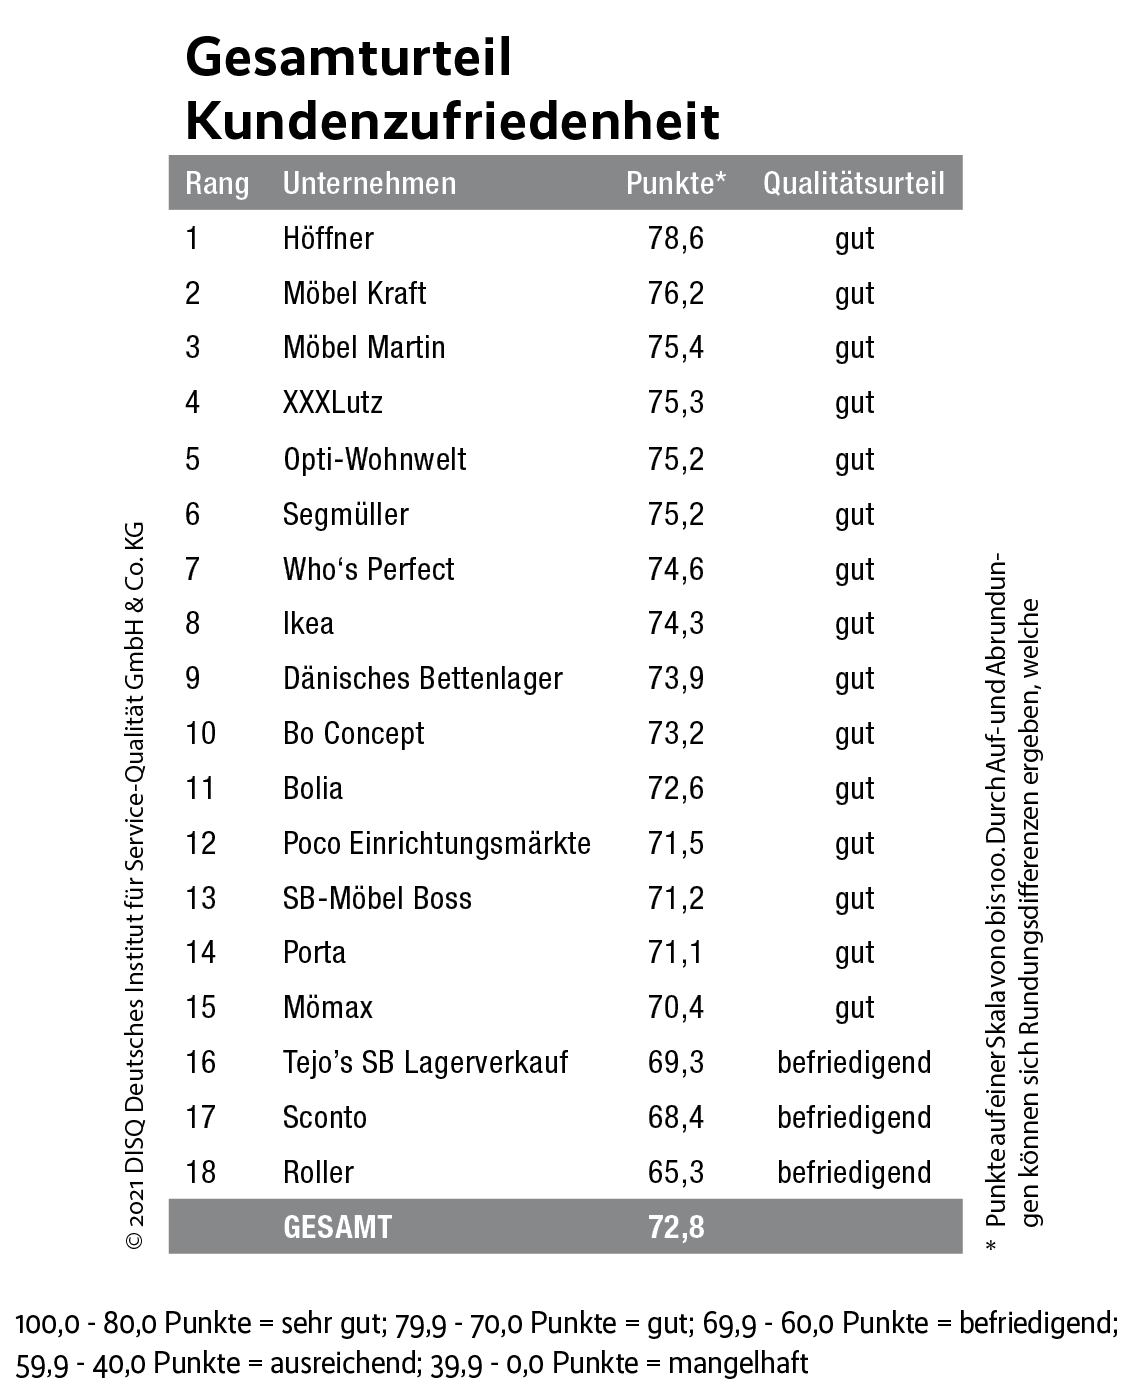 Kundenbewertung: Gute Noten für Höffner & Co.